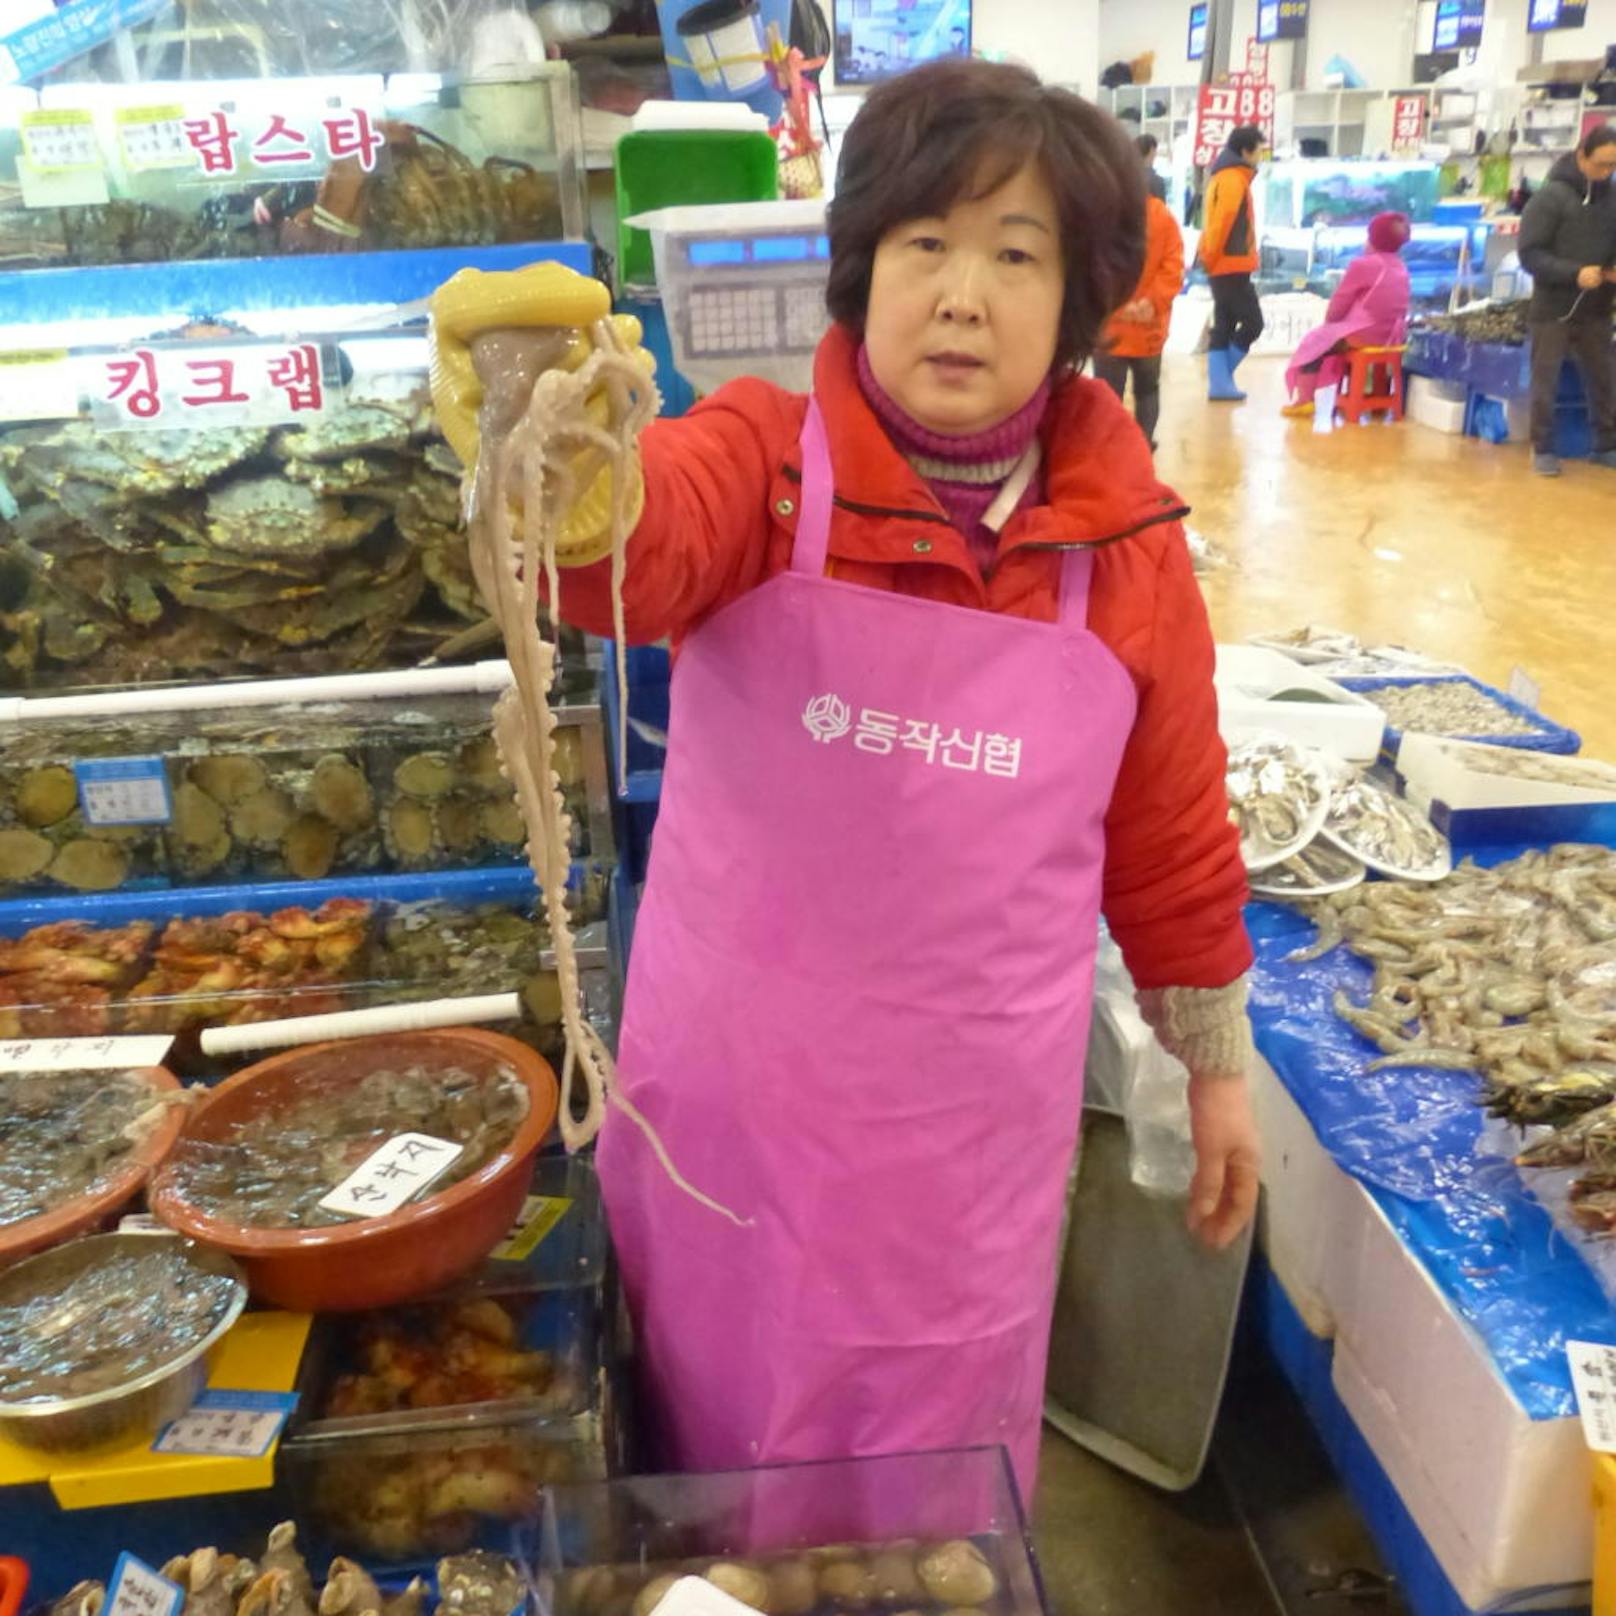 Die Verkäuferin bietet lebenden Tintenfisch an.